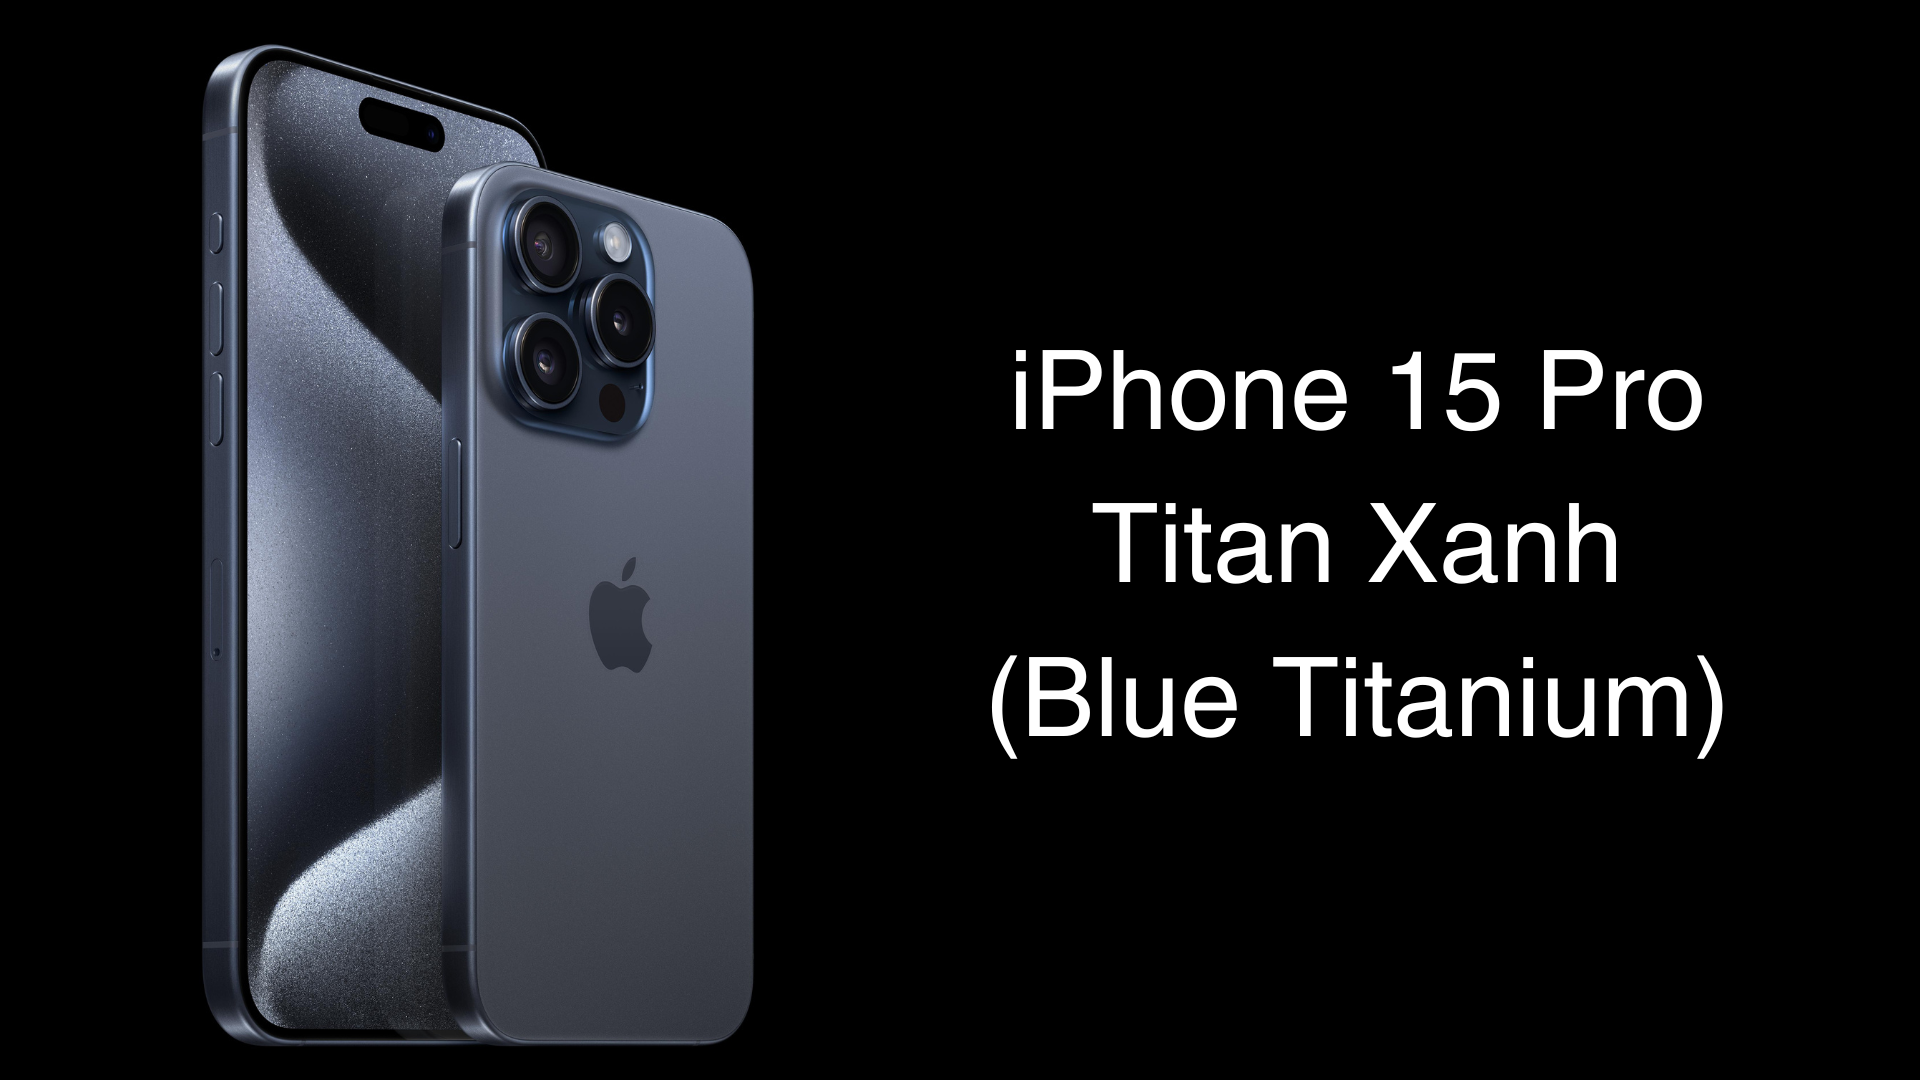 iPhone 15 Pro màu Titan Xanh với vẻ ngoài hiện đại nhưng không kém phần trang nhã